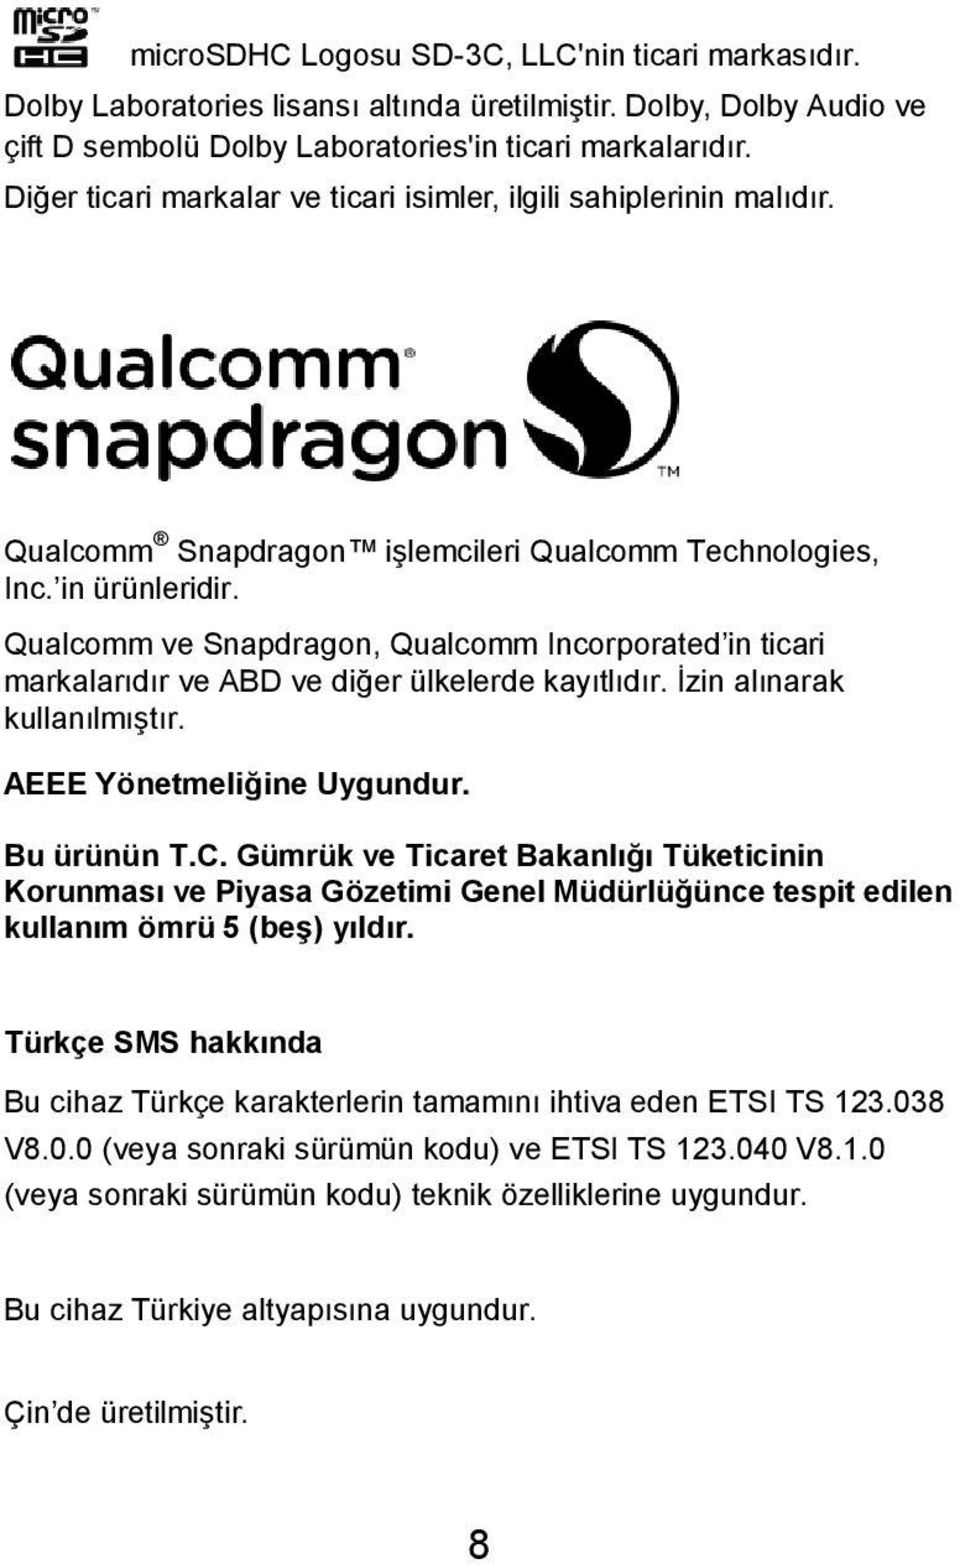 Qualcomm ve Snapdragon, Qualcomm Incorporated in ticari markalarıdır ve ABD ve diğer ülkelerde kayıtlıdır. İzin alınarak kullanılmıştır. AEEE Yönetmeliğine Uygundur. Bu ürünün T.C.